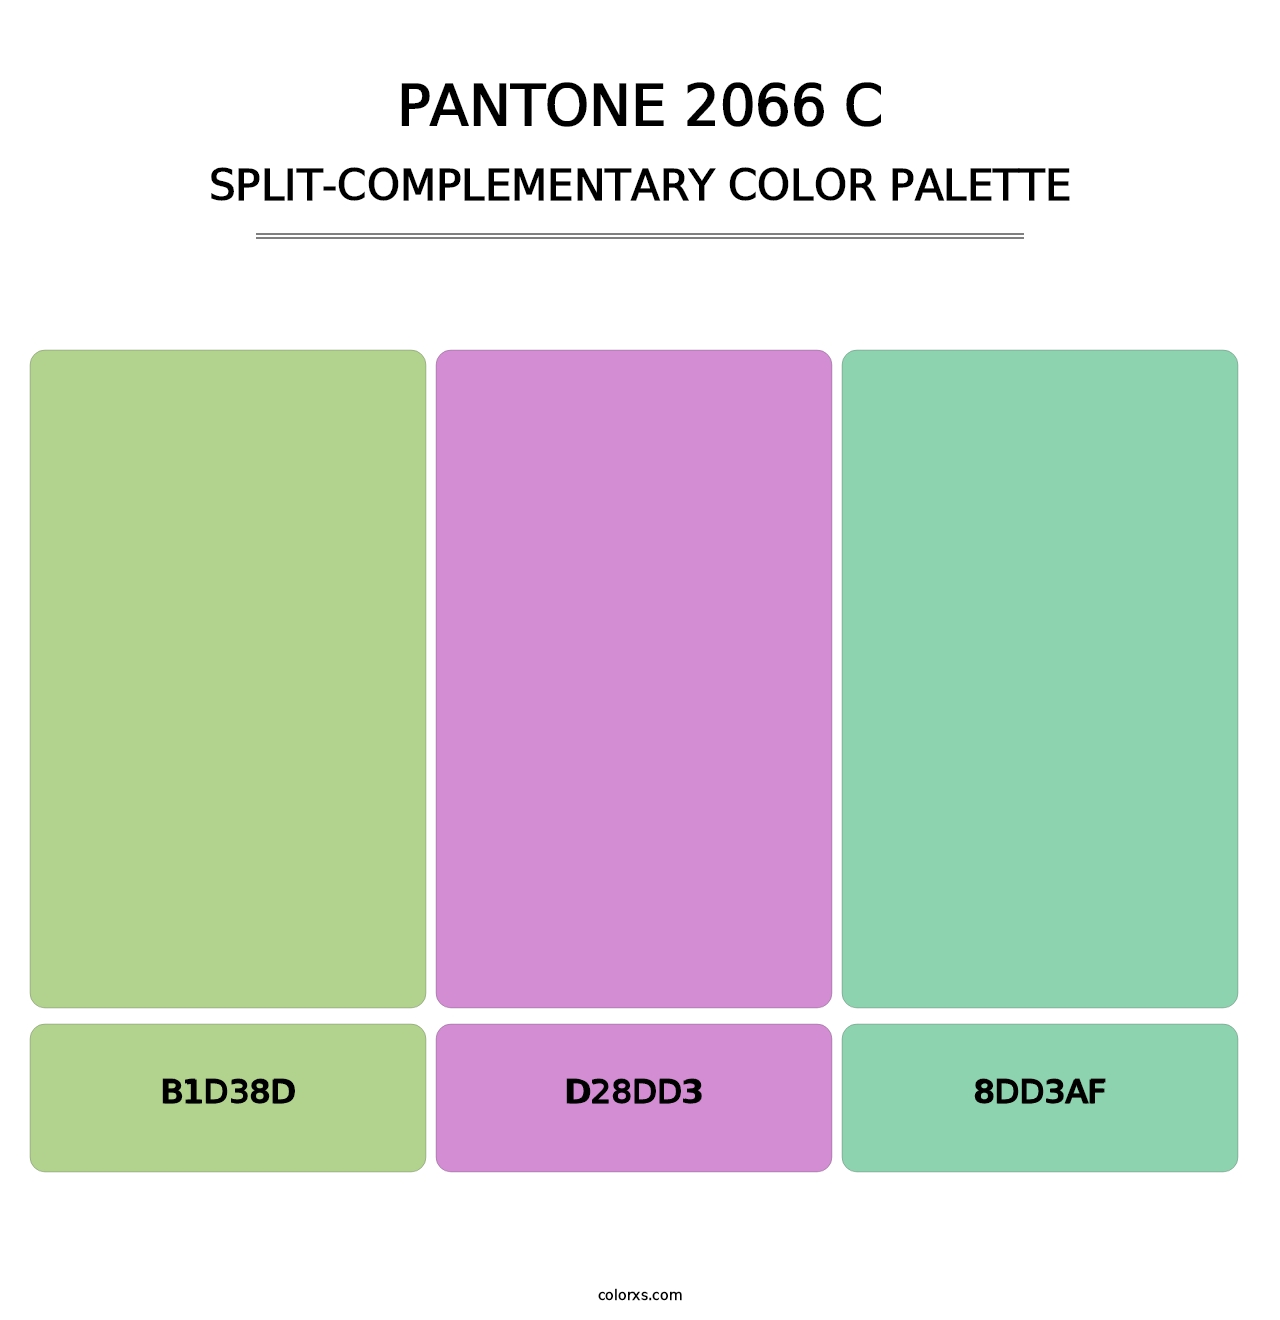 PANTONE 2066 C - Split-Complementary Color Palette